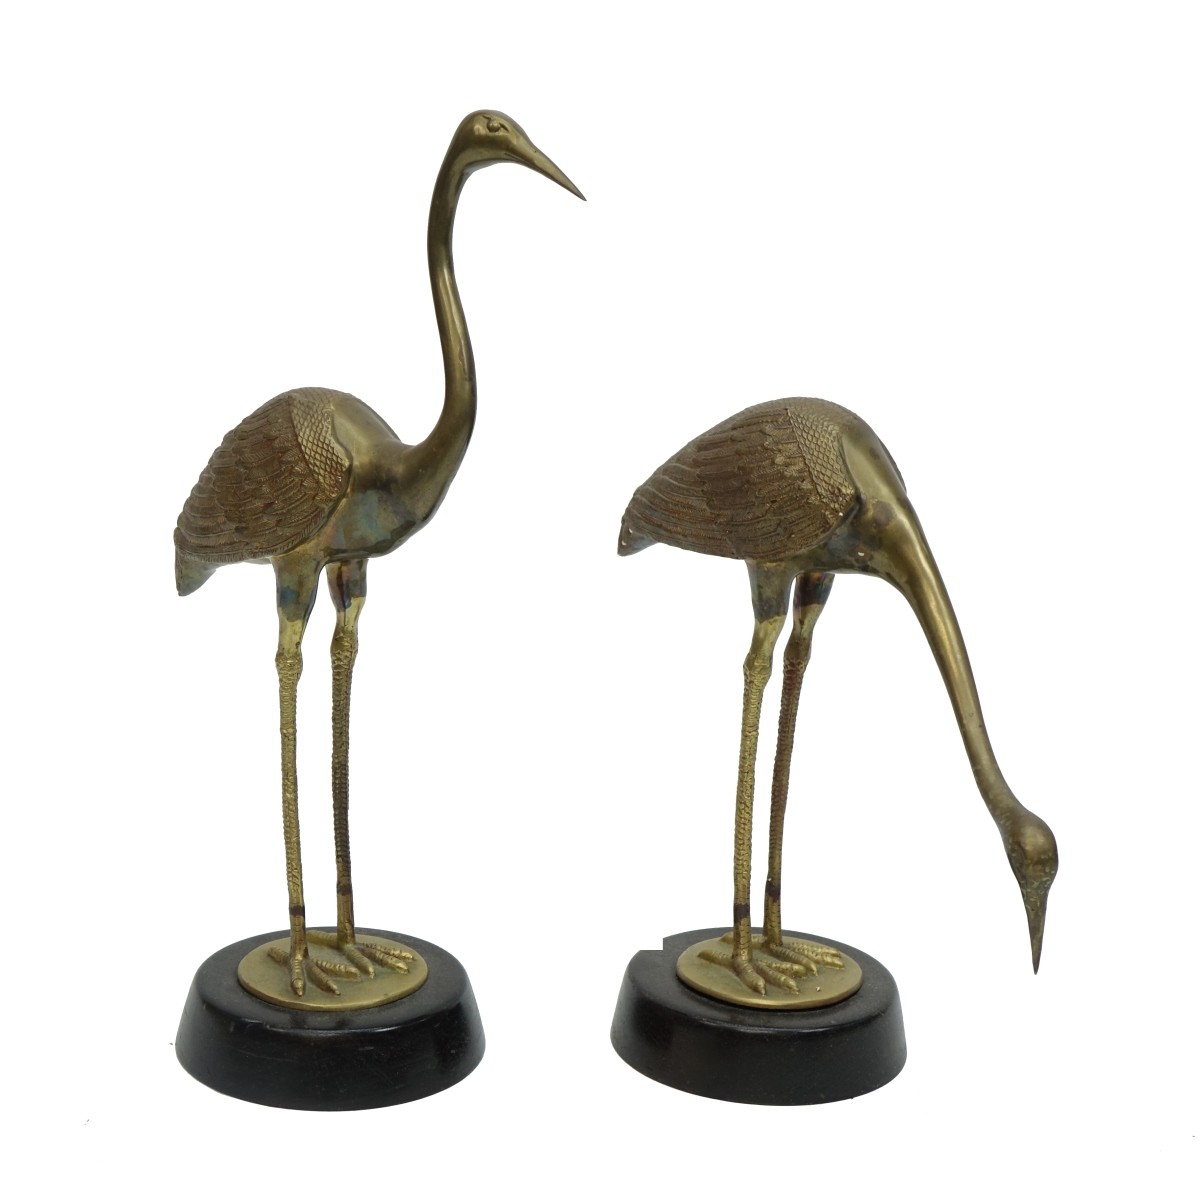 Pair of Large Vintage Brass Models of Herons